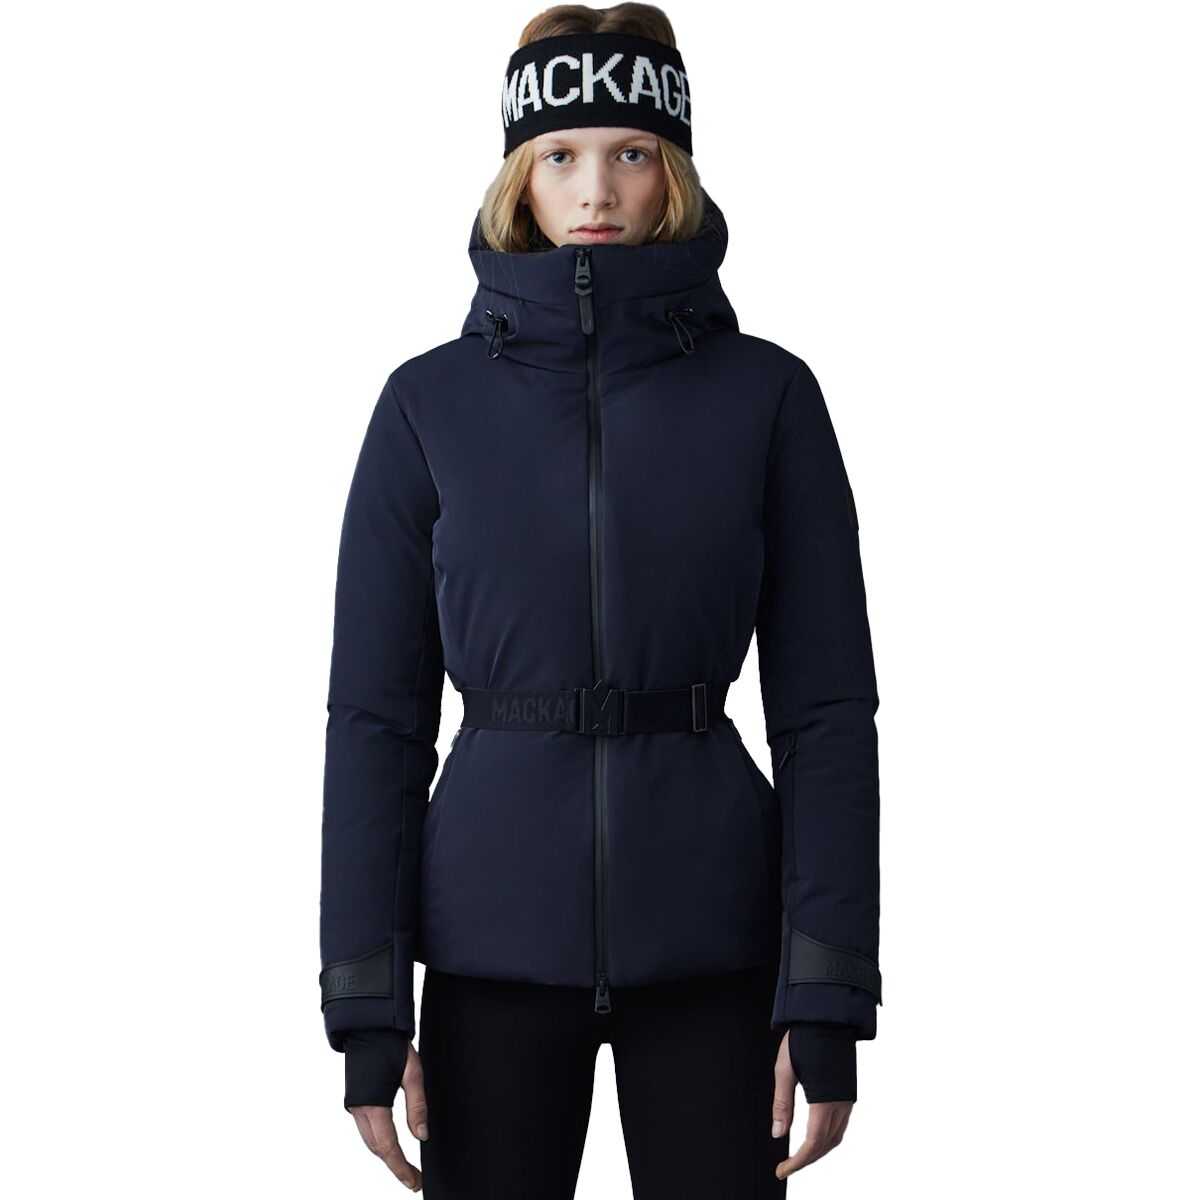 Mackage Krystal No-Fur Jacket - Women's Black, XS